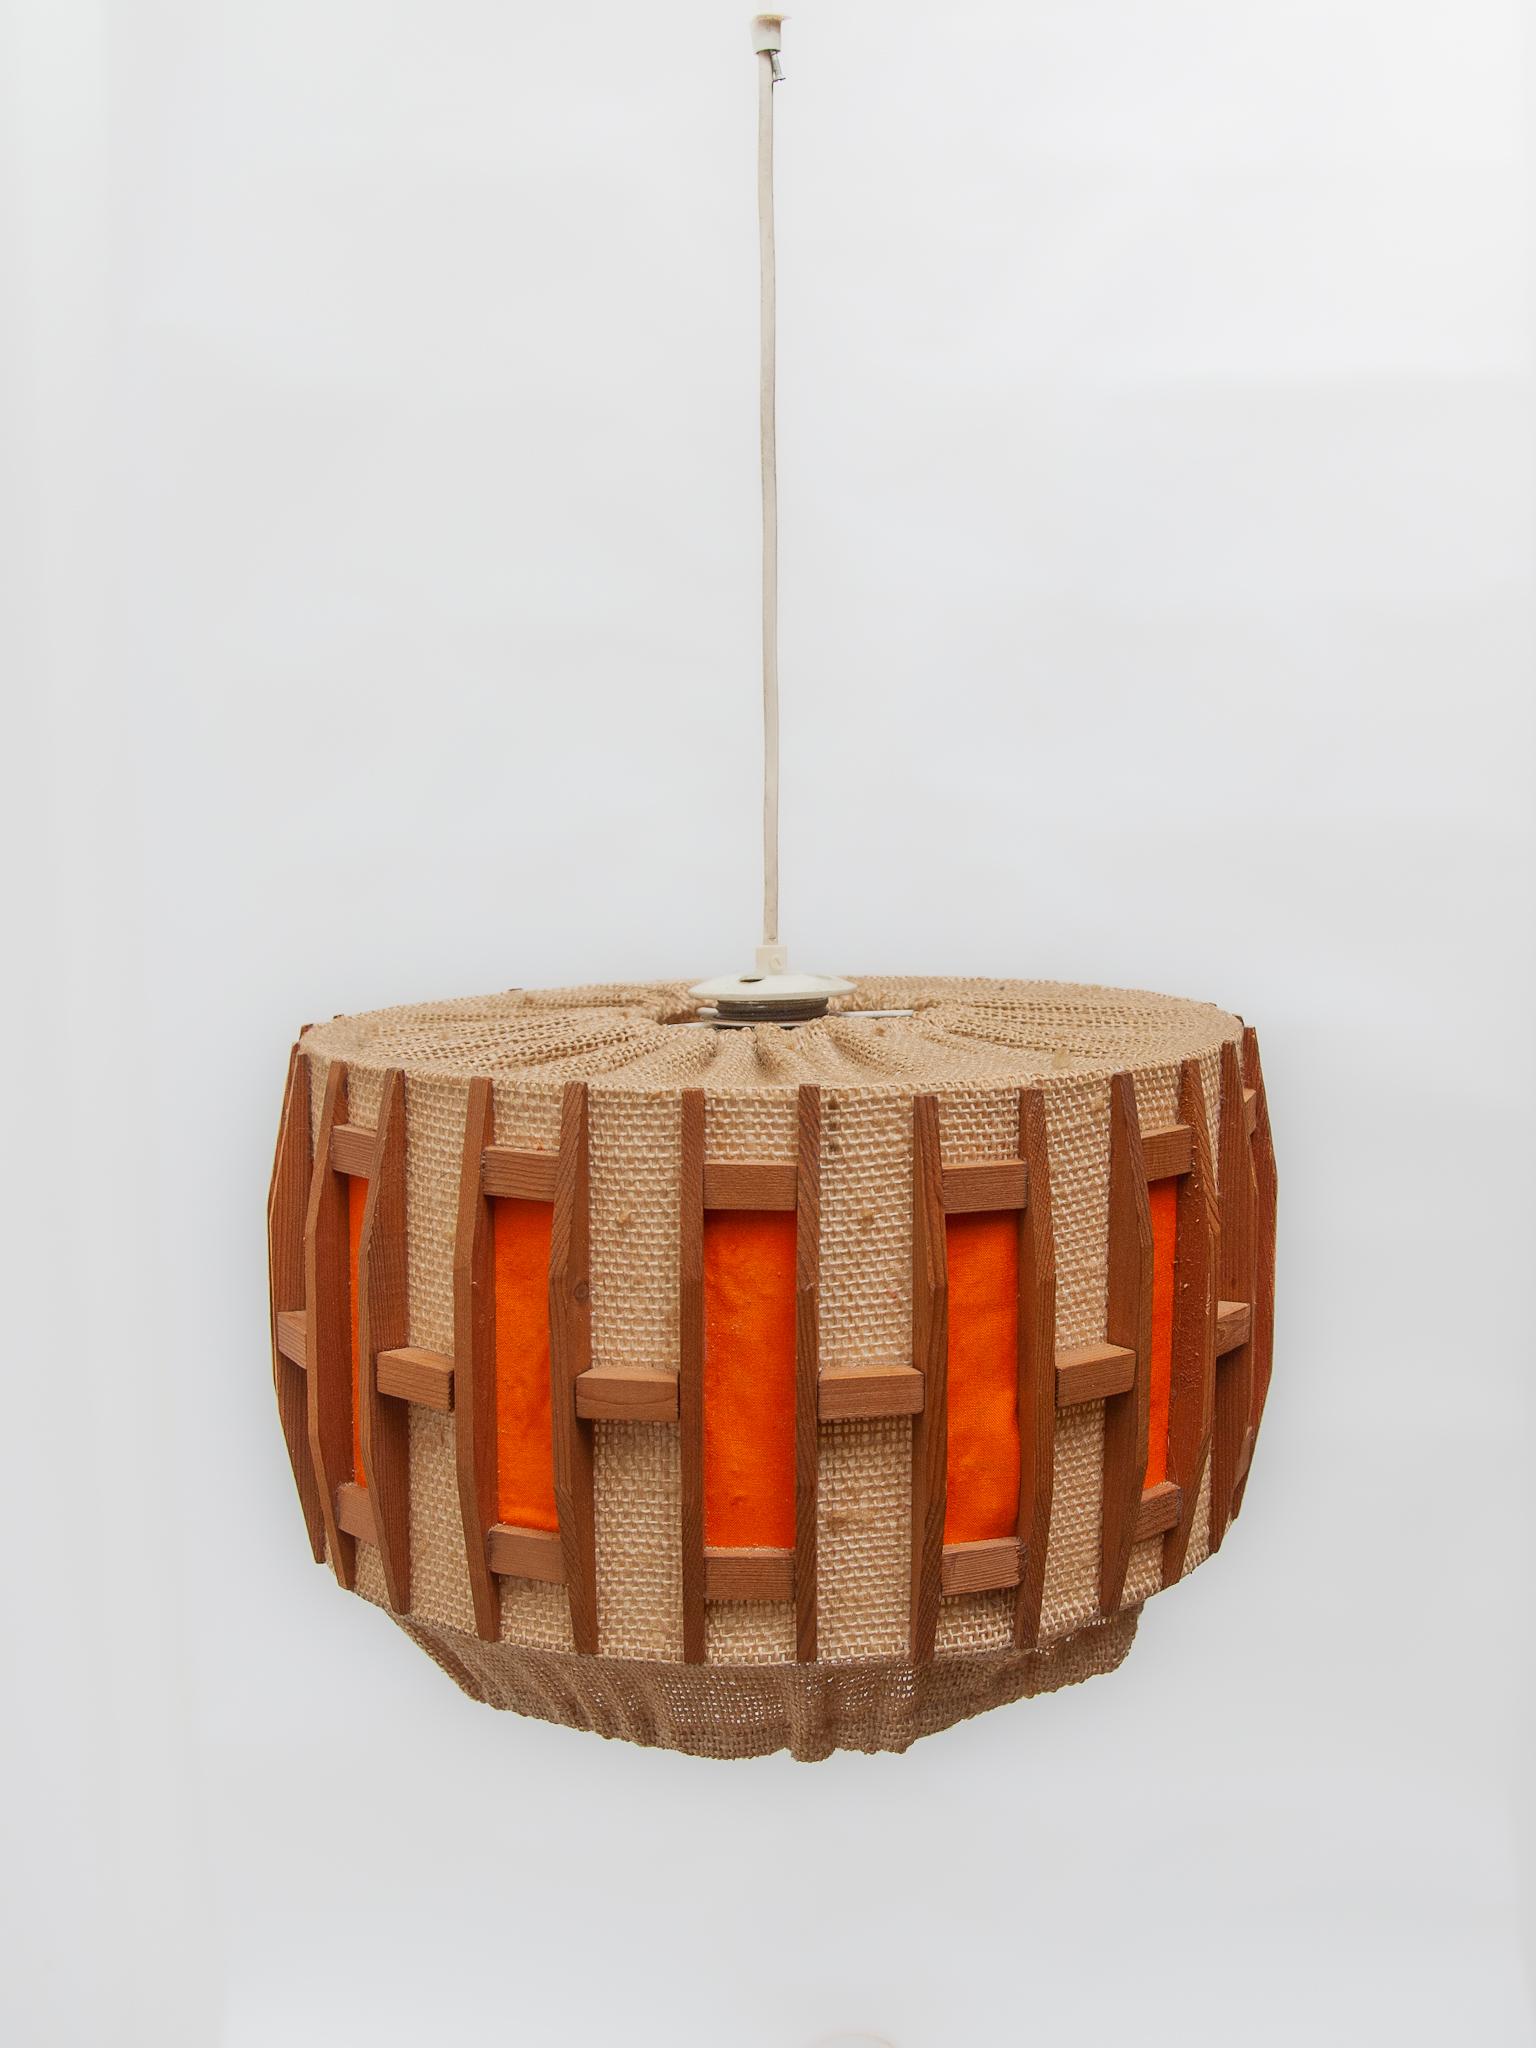 Belgian Orange Midcentury Belgium Design in Teak and Jute Pendant Lamp, 1960s